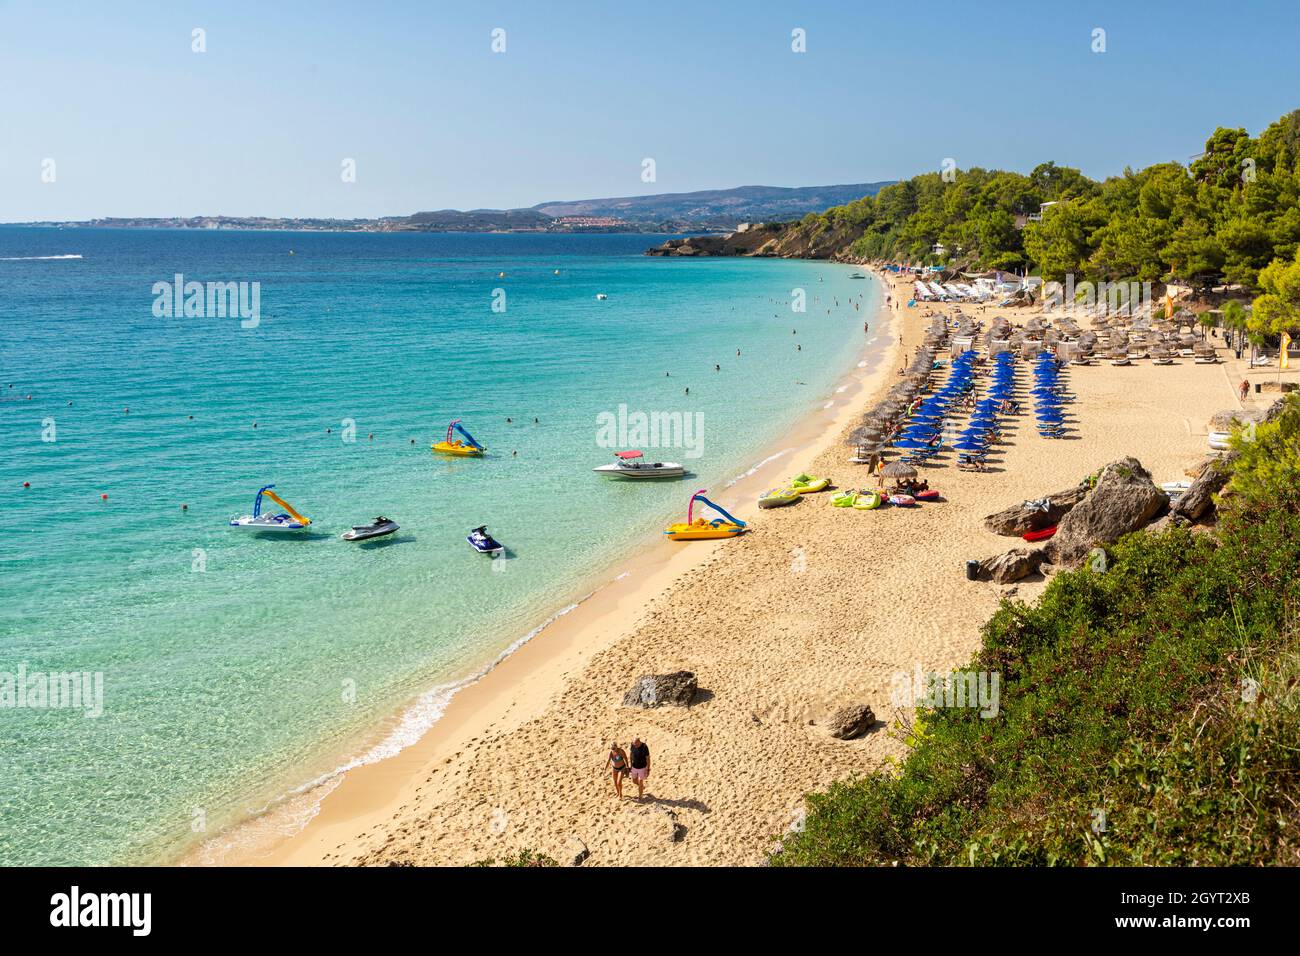 Las transparentes aguas de la playa de Makris Gialios - un popular lugar turístico cerca de Argostoli, Kefalonia, Islas Jónicas, Grecia Foto de stock